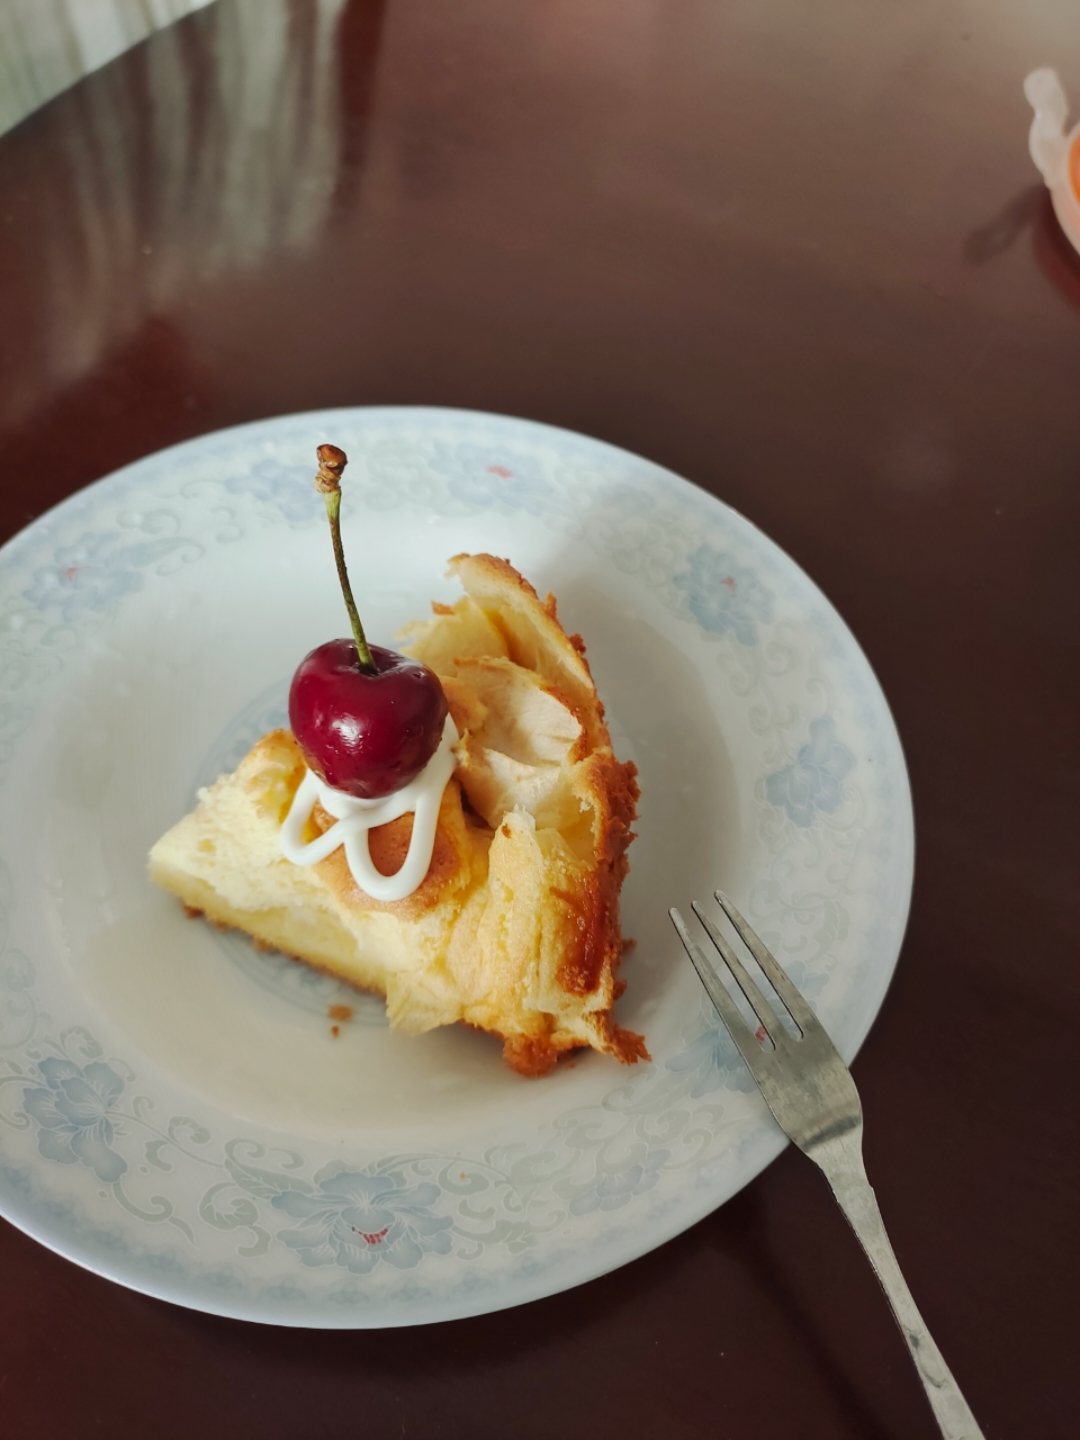 苹果隐形蛋糕 零失败的美味神奇蛋糕
★快手美味甜品★